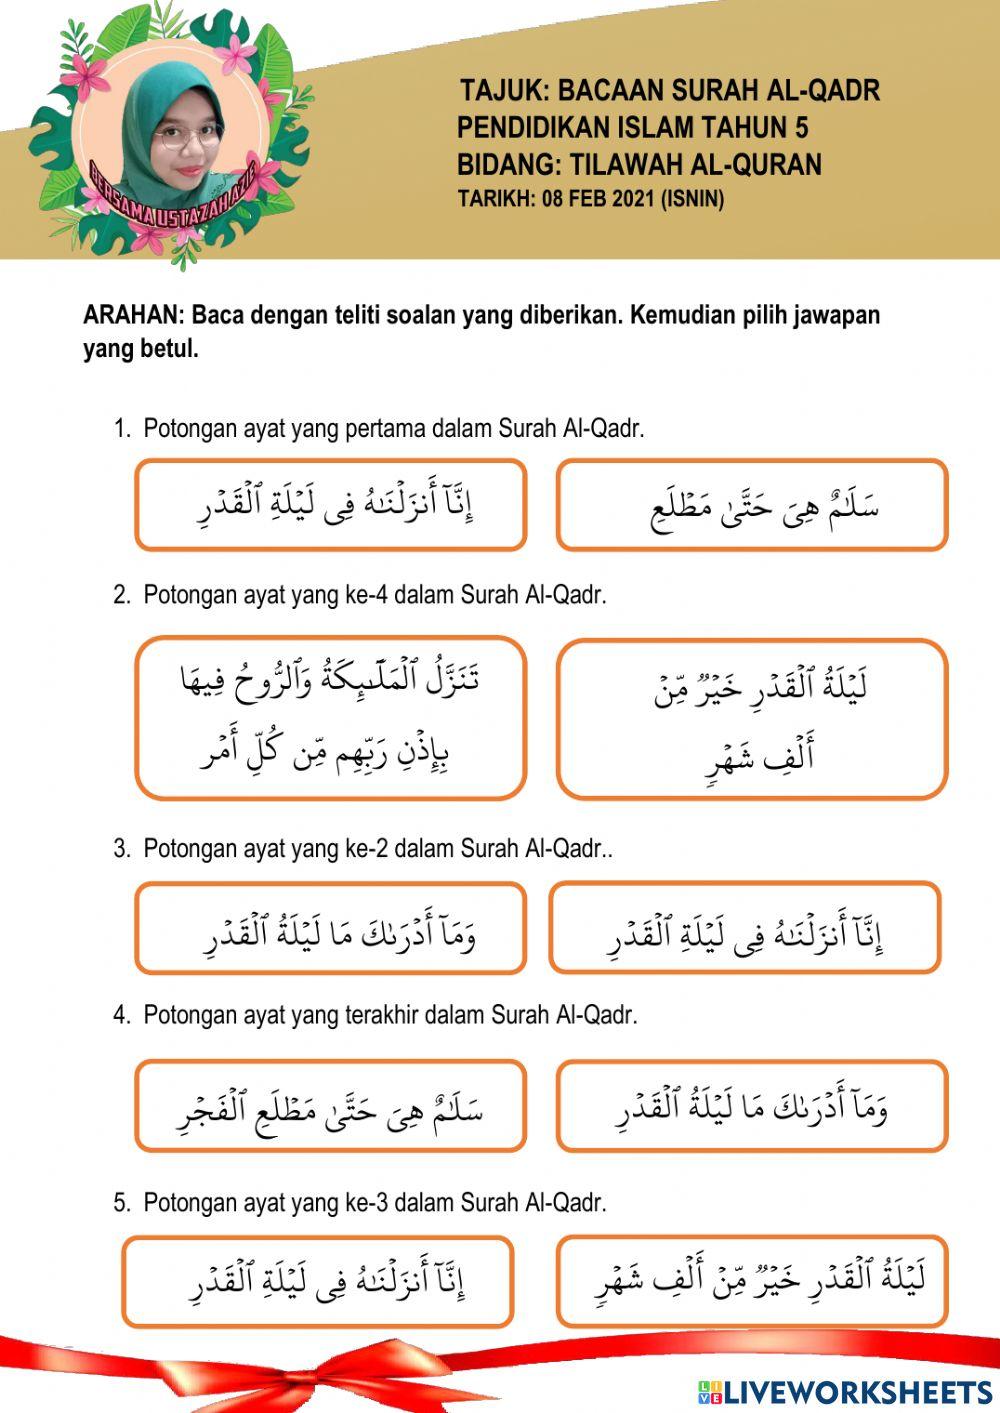 Bacaan surah al-qadr